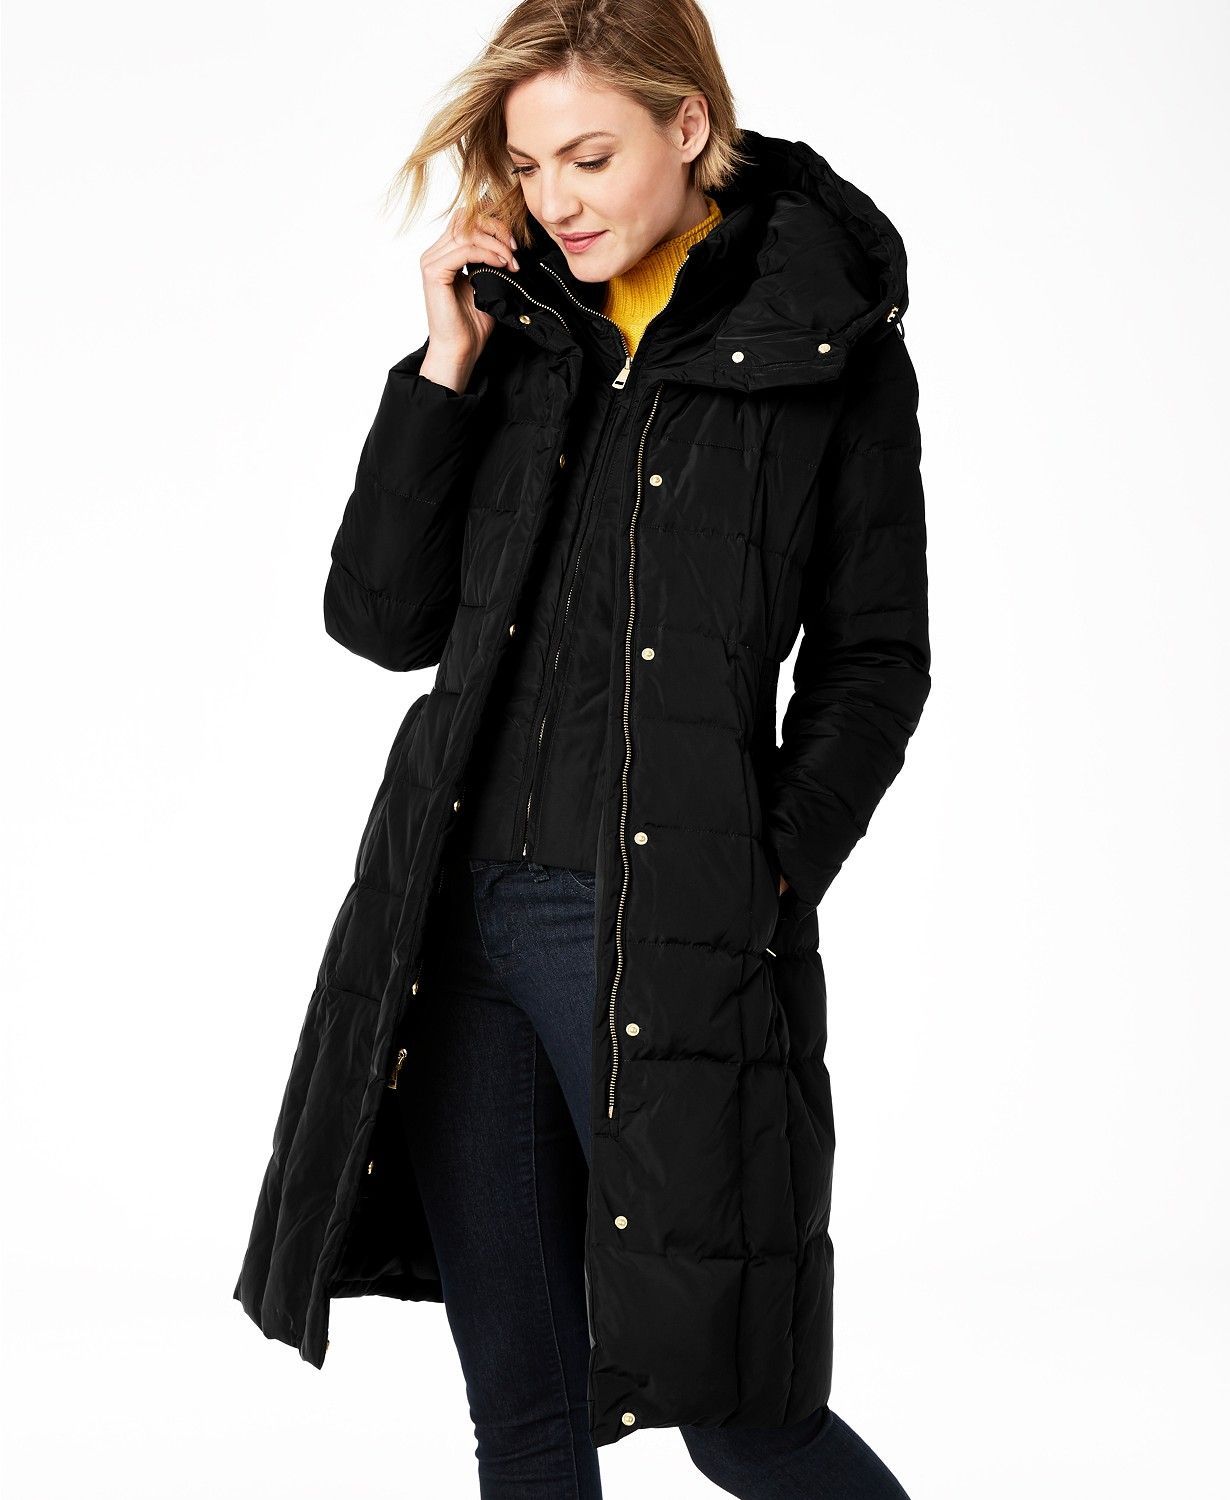 TOTAMALA Womens Luxury Faux Furs Coat Warm Outerwear Parkas Long Coat Oversized Winter Long Jackets 